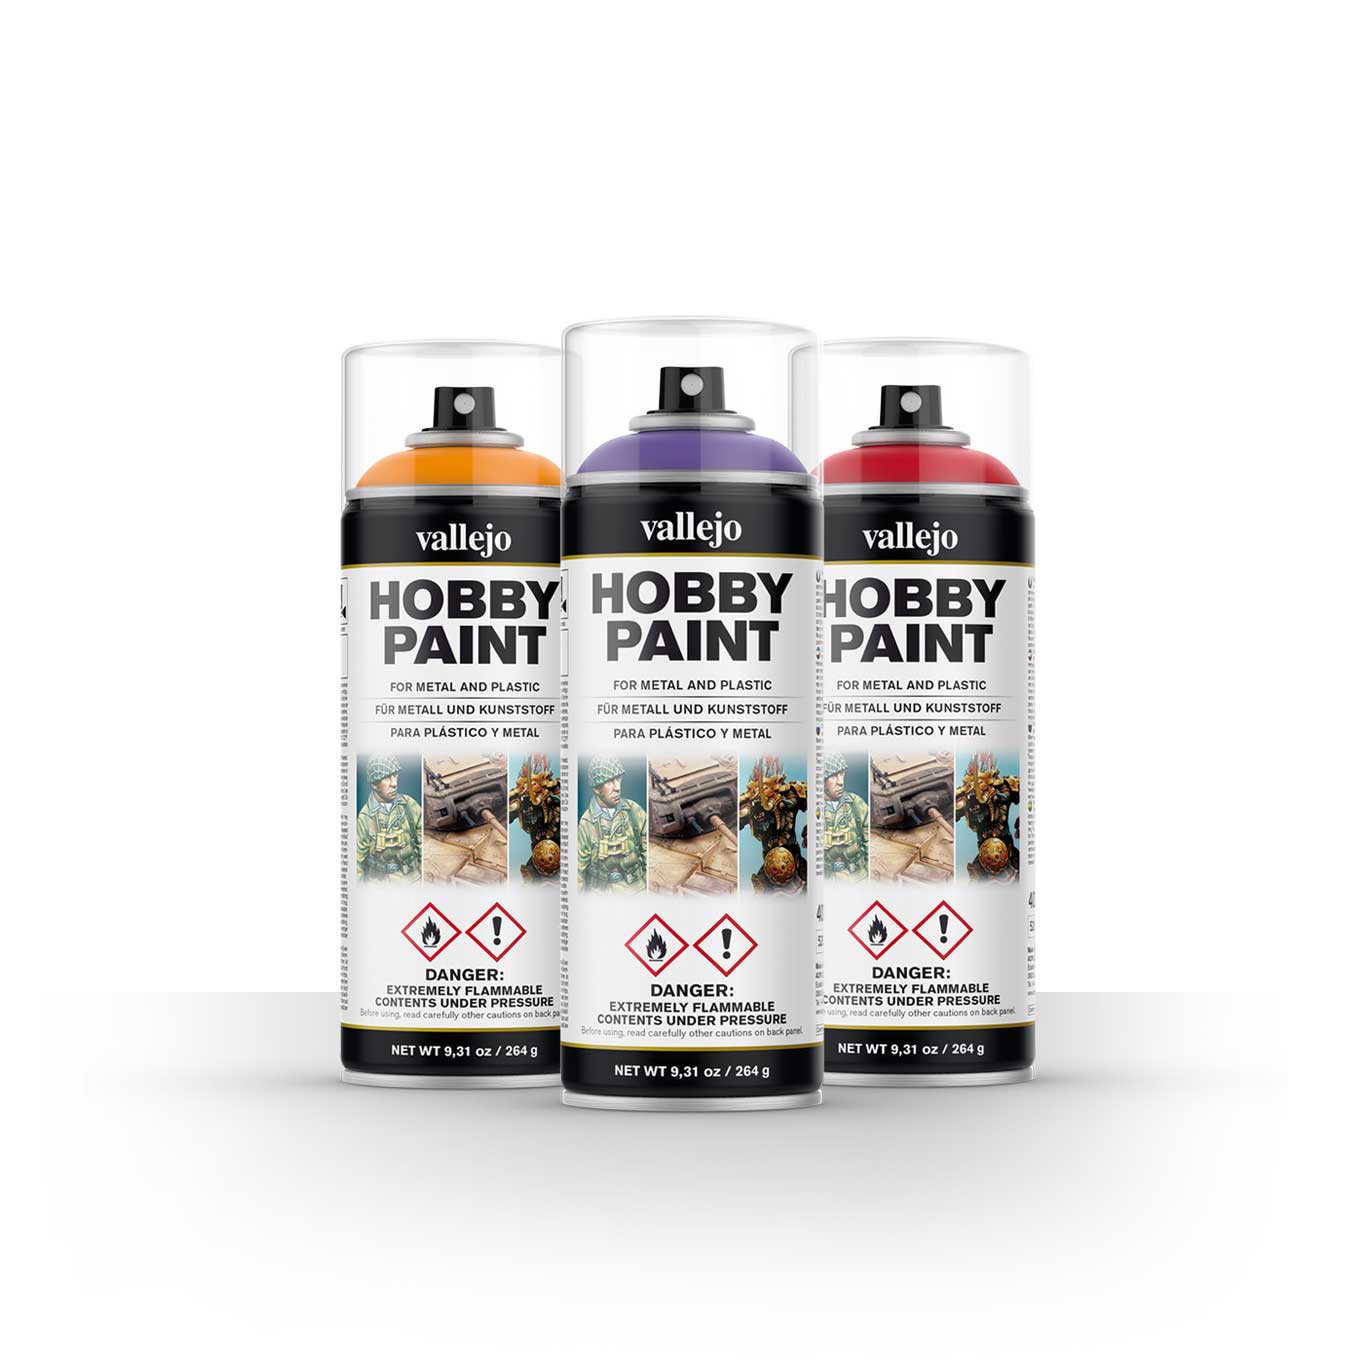 Hobby Spray Paints